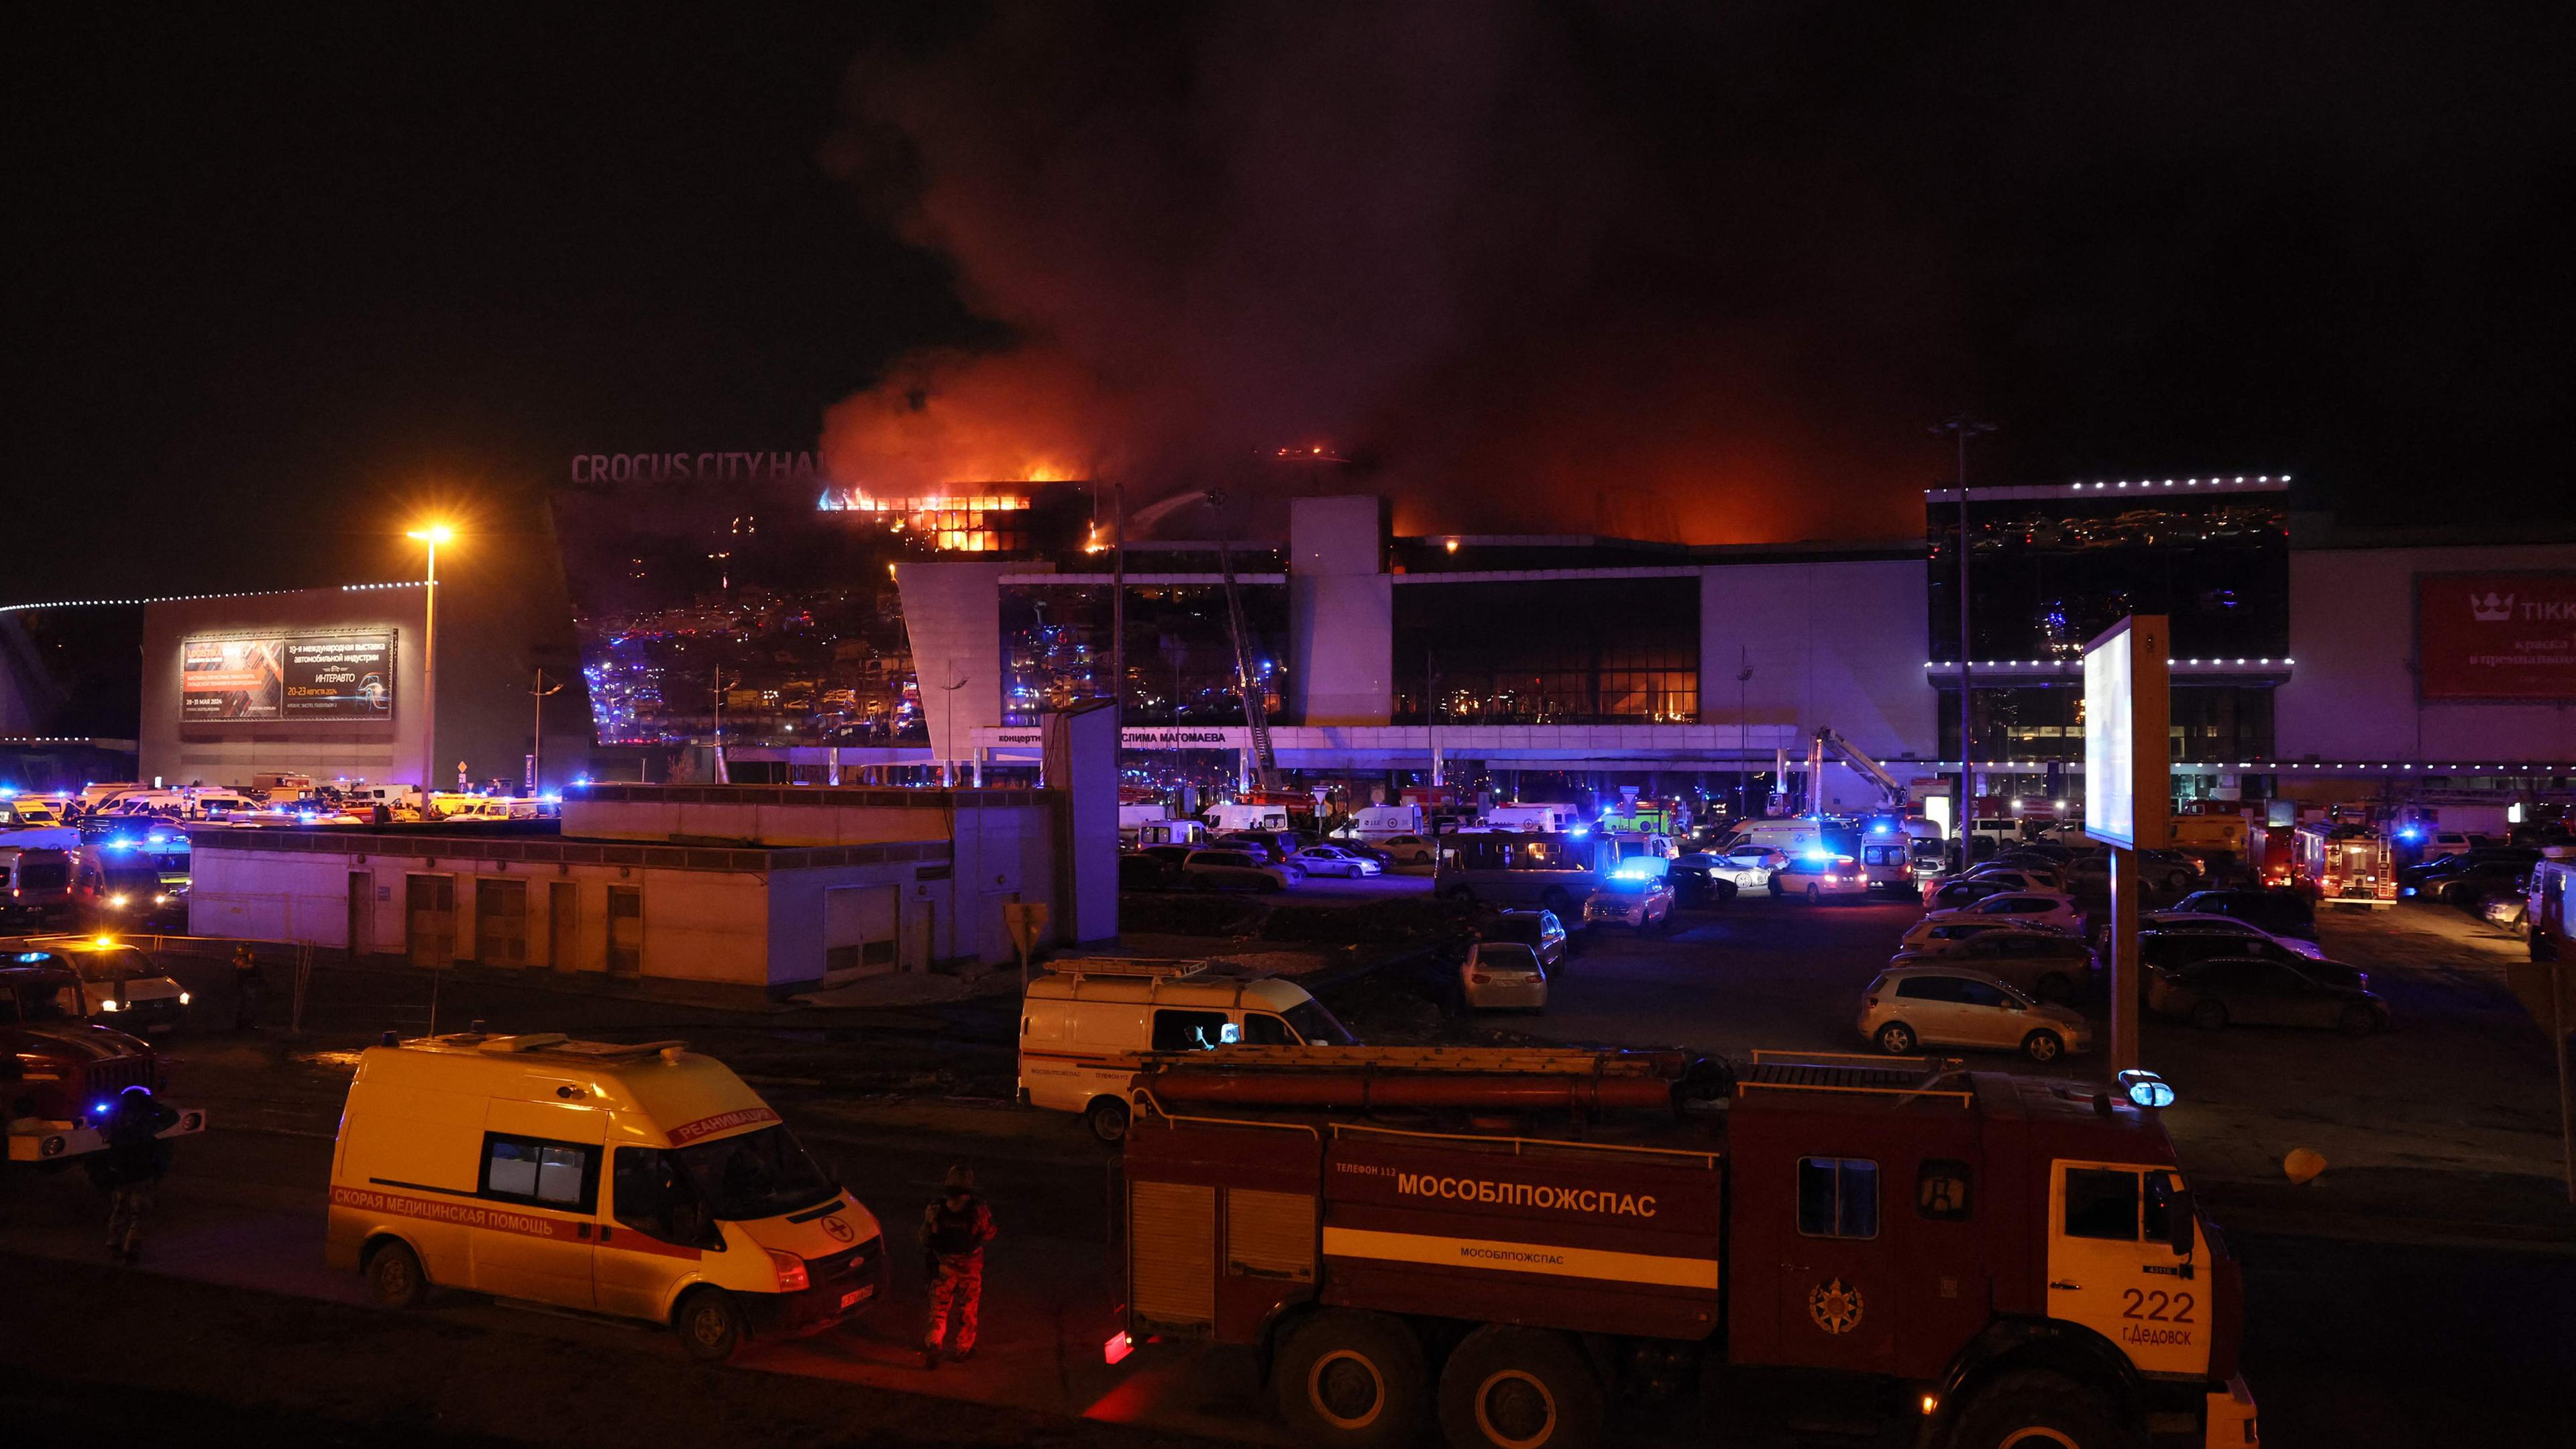 Russland: Nach der Schießerei in Krasnogorsk bei Moskau sind Einsatzfahrzeuge vor dem brennenden Konzertsaal Crocus City Hall zu sehen.